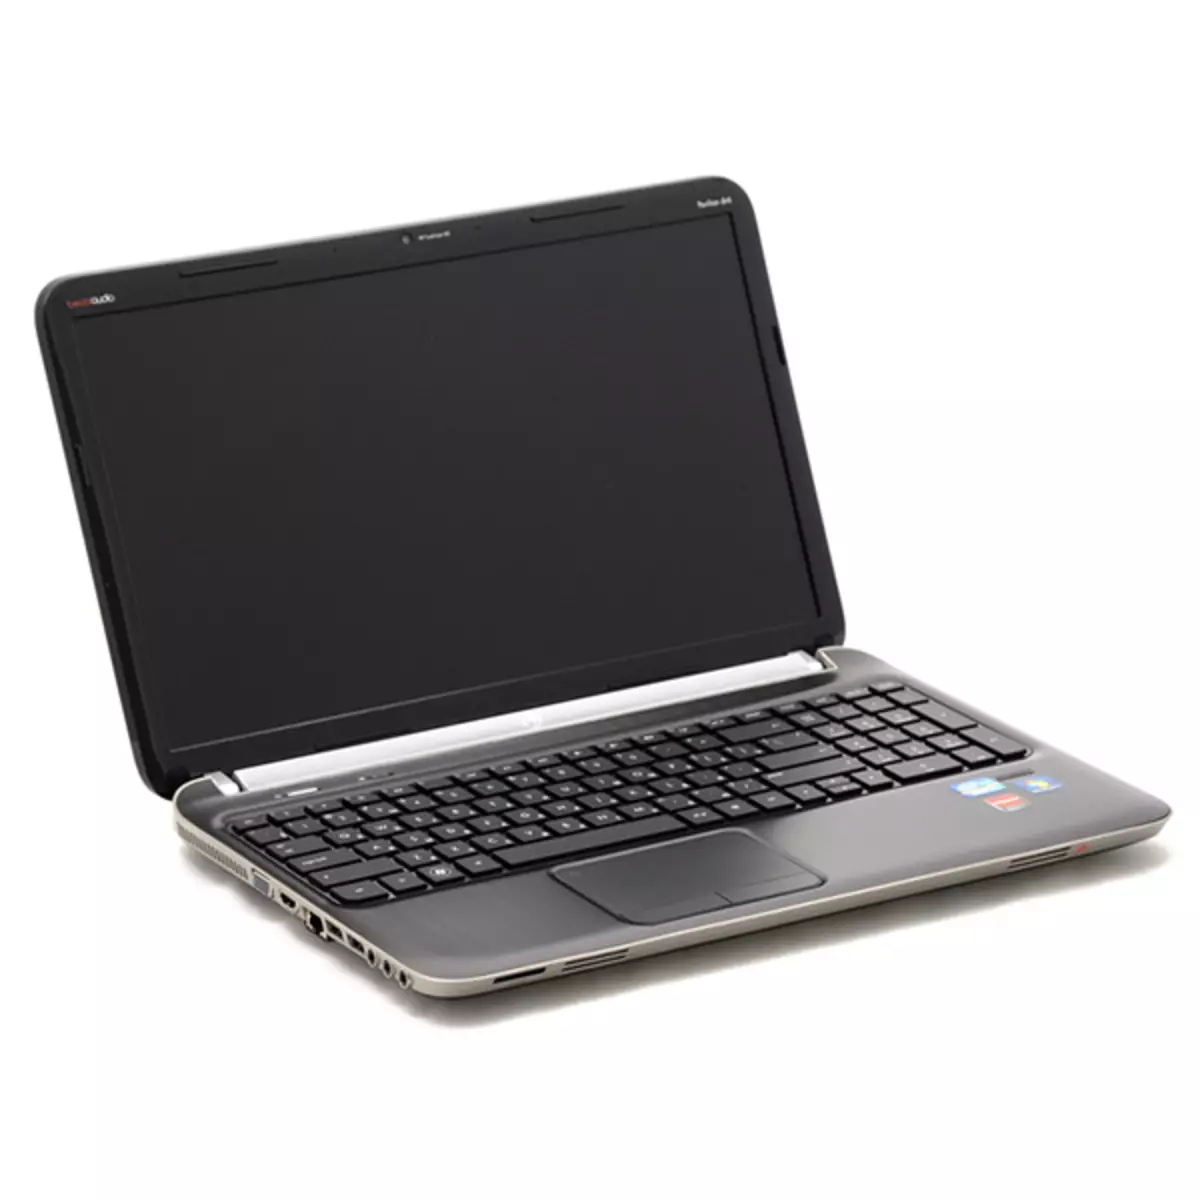 Downloadstjoerprogramma's foar HP Pavilion DV6 laptop